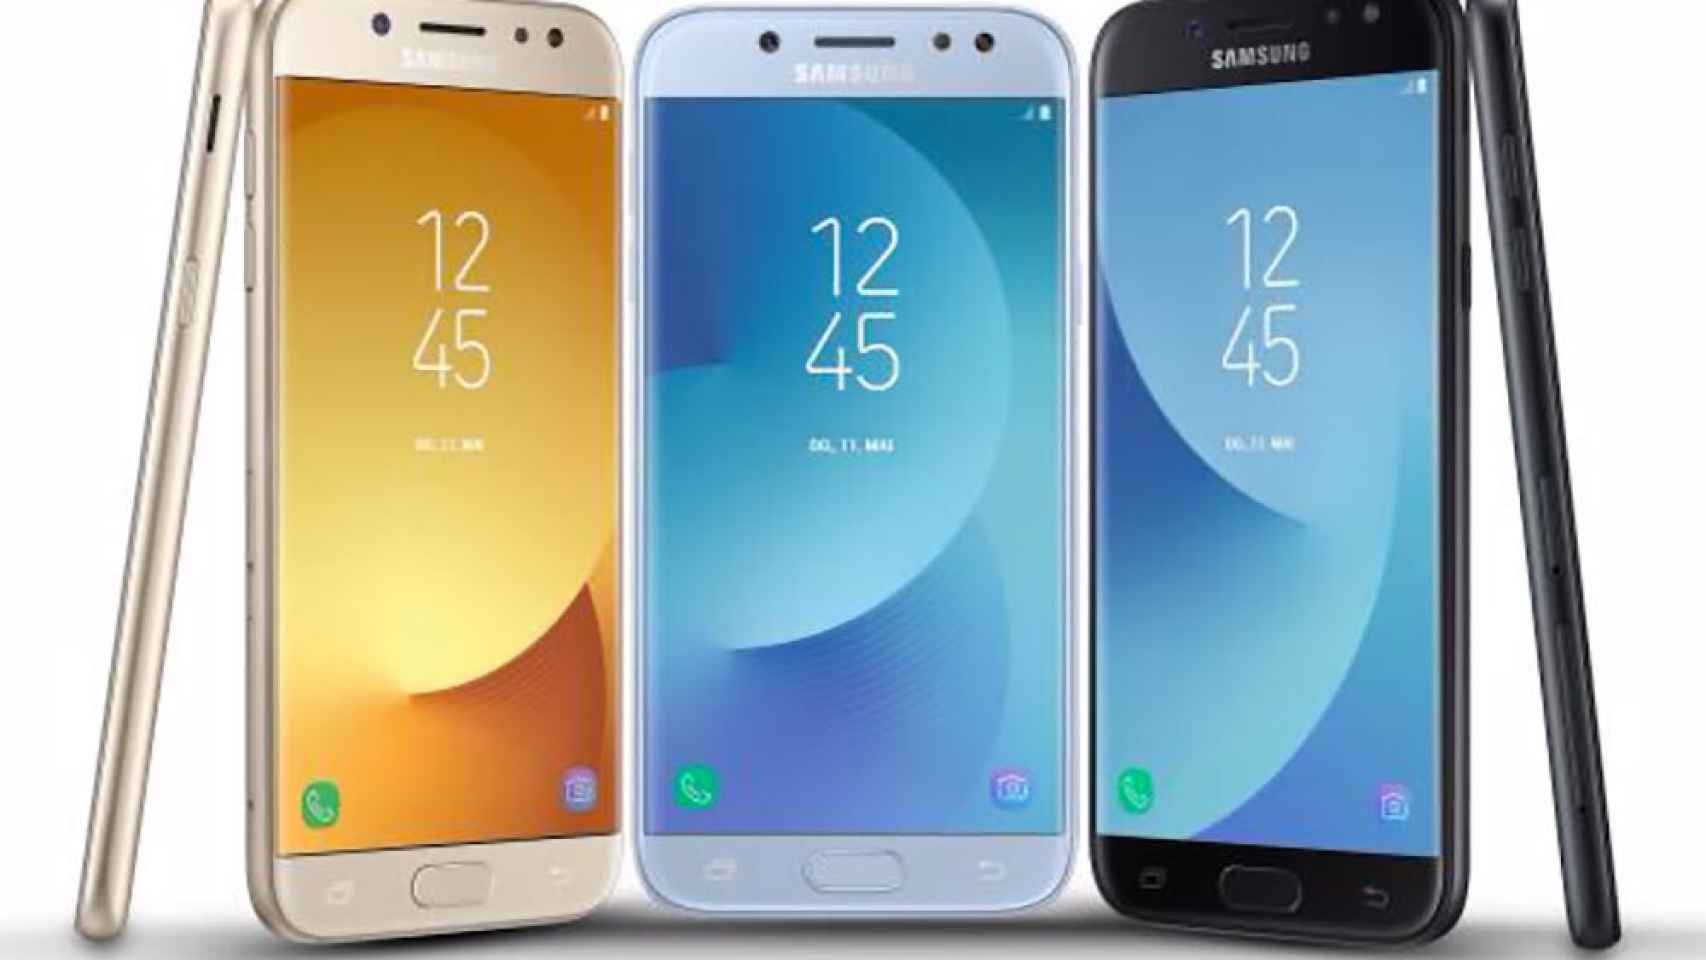 Poner a prueba o probar gorra Factibilidad Samsung Galaxy J3 2017, J5 2017 y J7 2017: características y precios